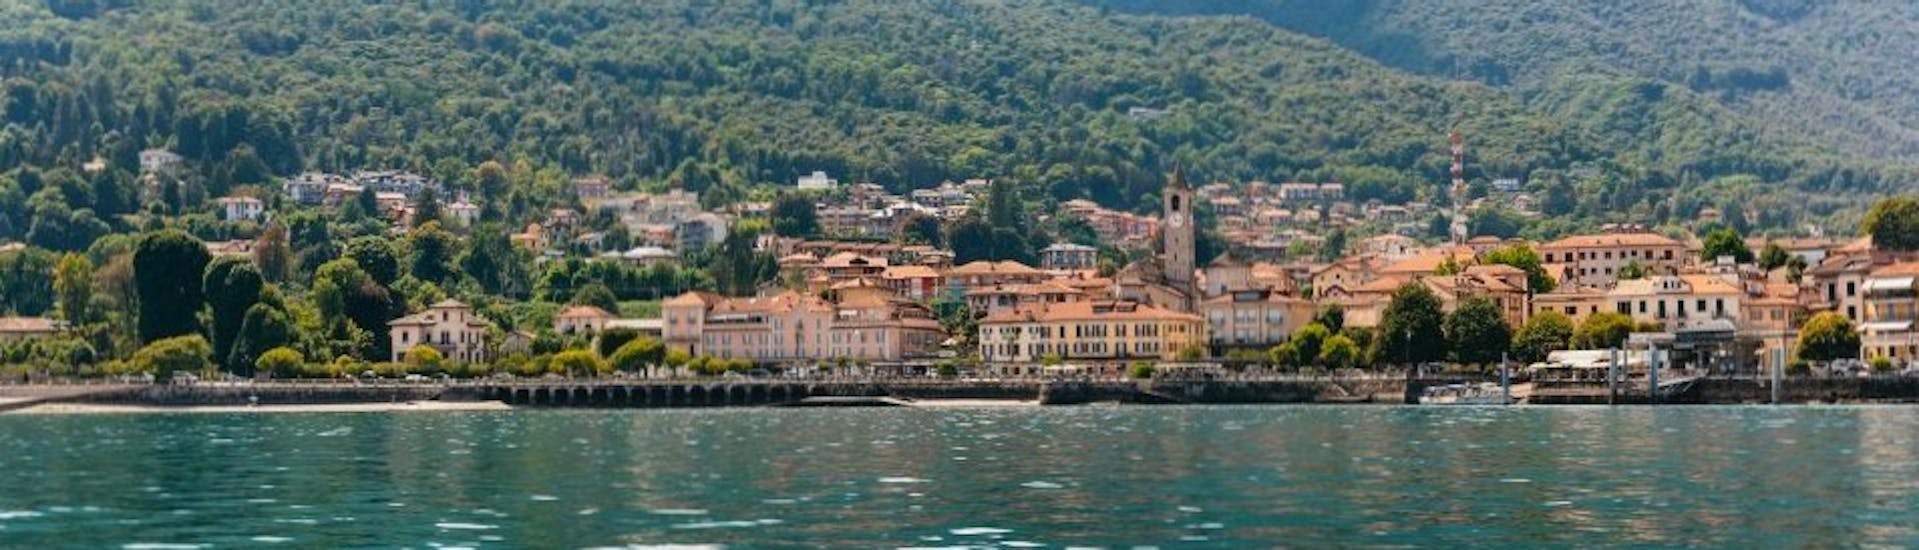 Bootstour von Stresa - Isola Bella (Lake Maggiore) mit Sightseeing.